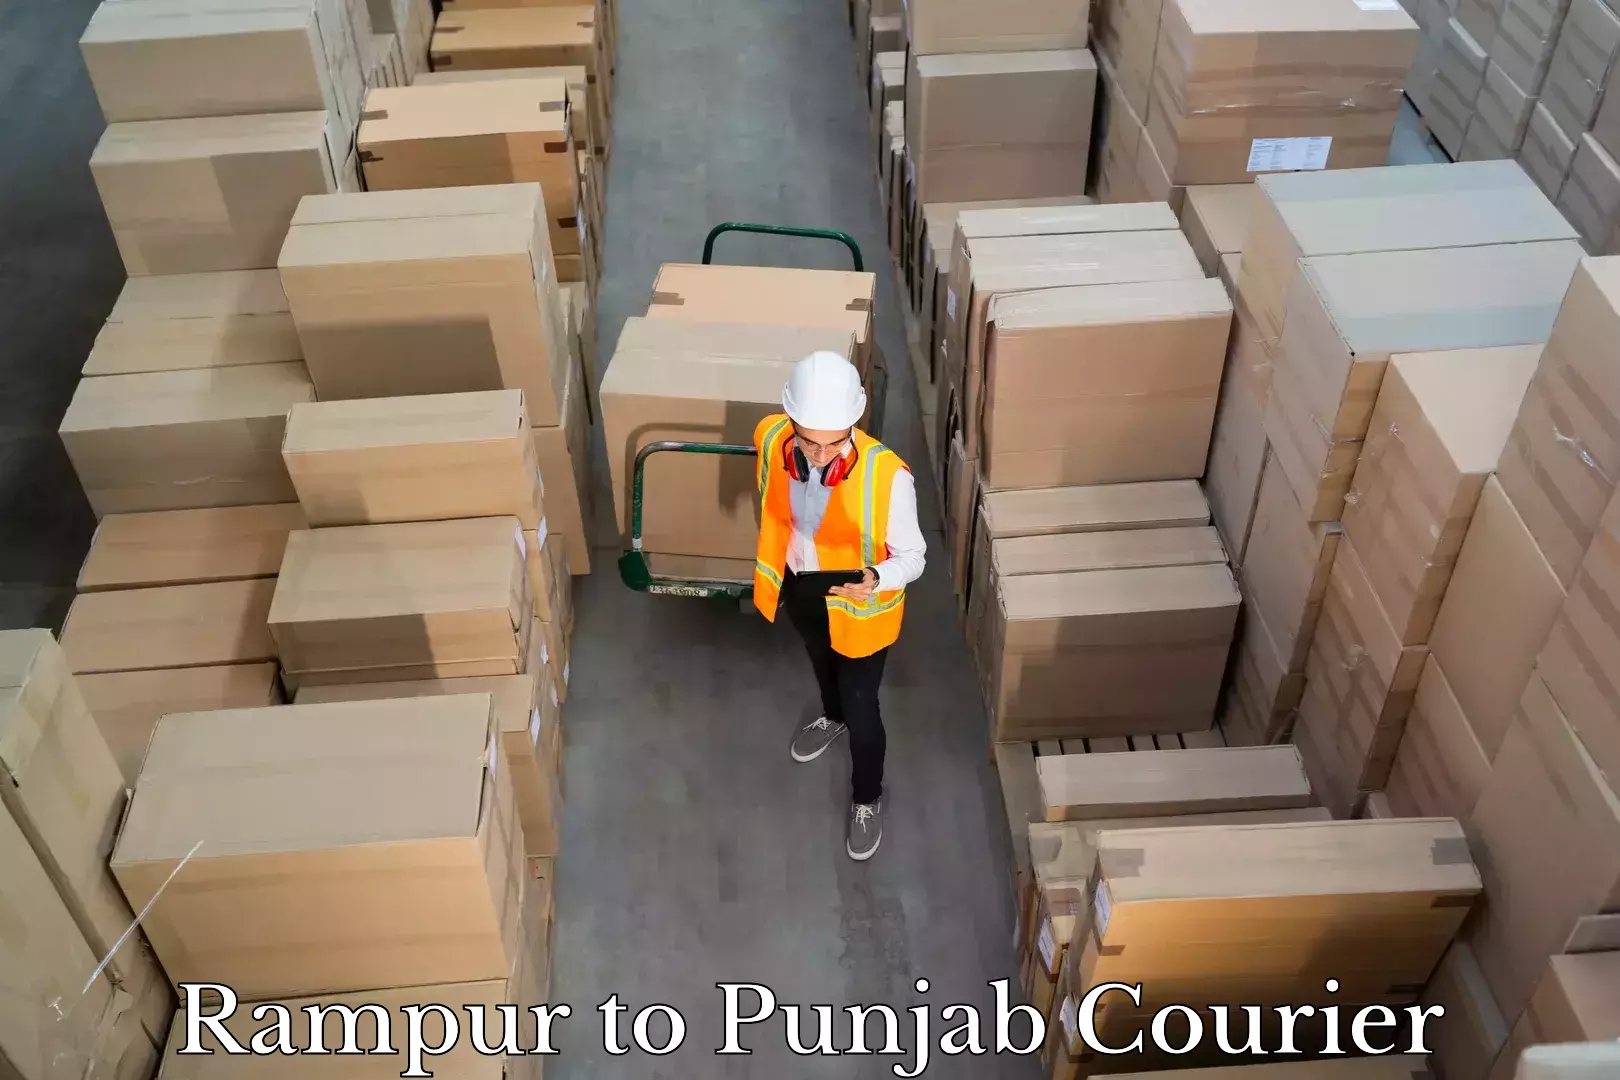 Luggage transport service in Rampur to Punjab